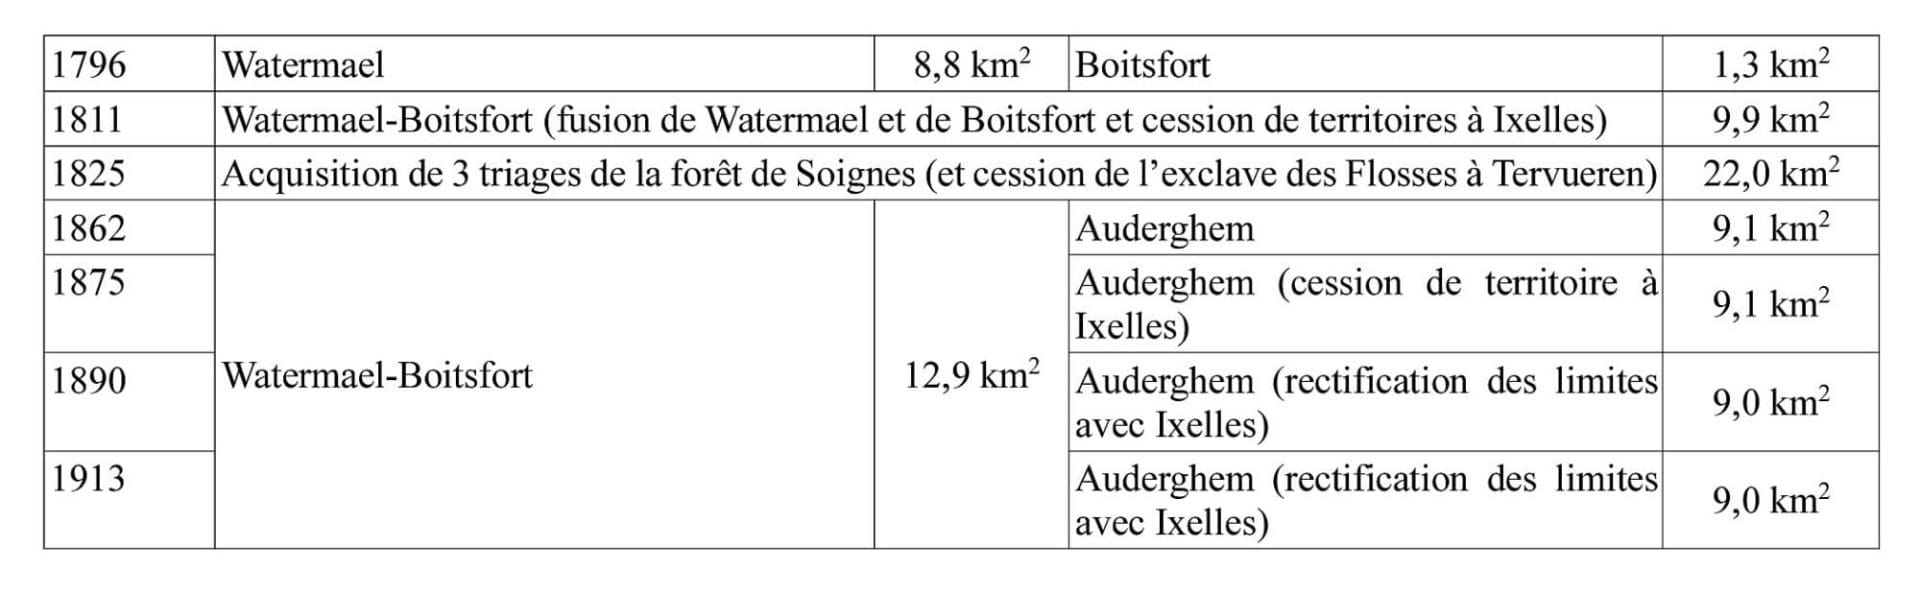 Synthèse des modifications territoriales de Watermael-Boitsfort et d’Auderghem.